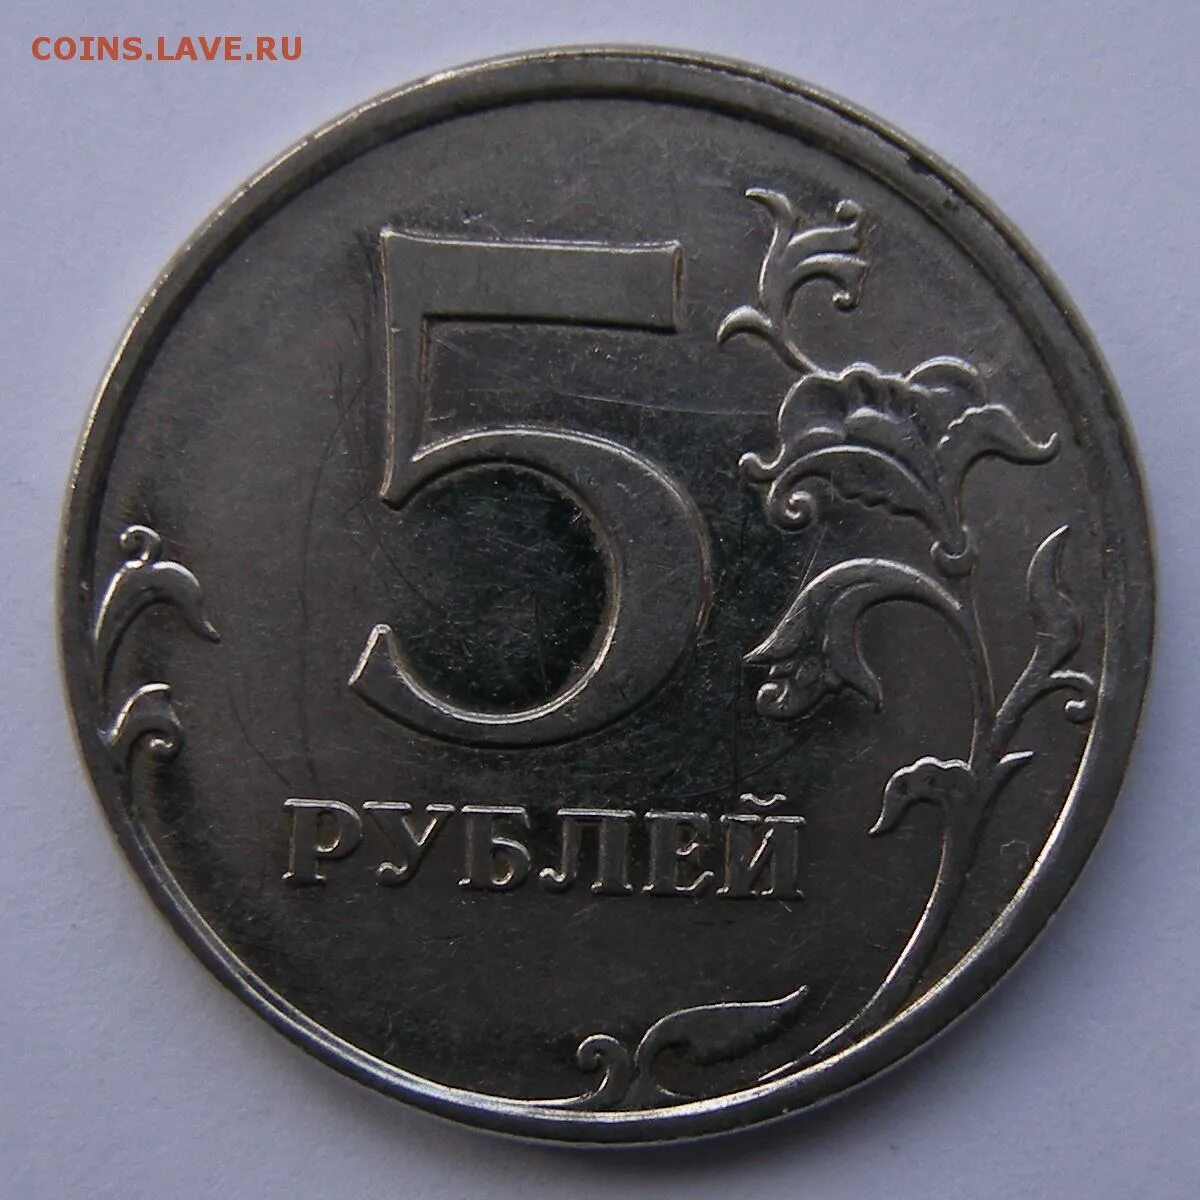 5 рублей 2009 ммд. 5 Р 2009 ММД старые. Монеты 5 рублей 2009 стоимость. 5 Рублей 2009 ММД магнитная цена разновидность. Пять рублей 2009 с бронзовой каемкой.